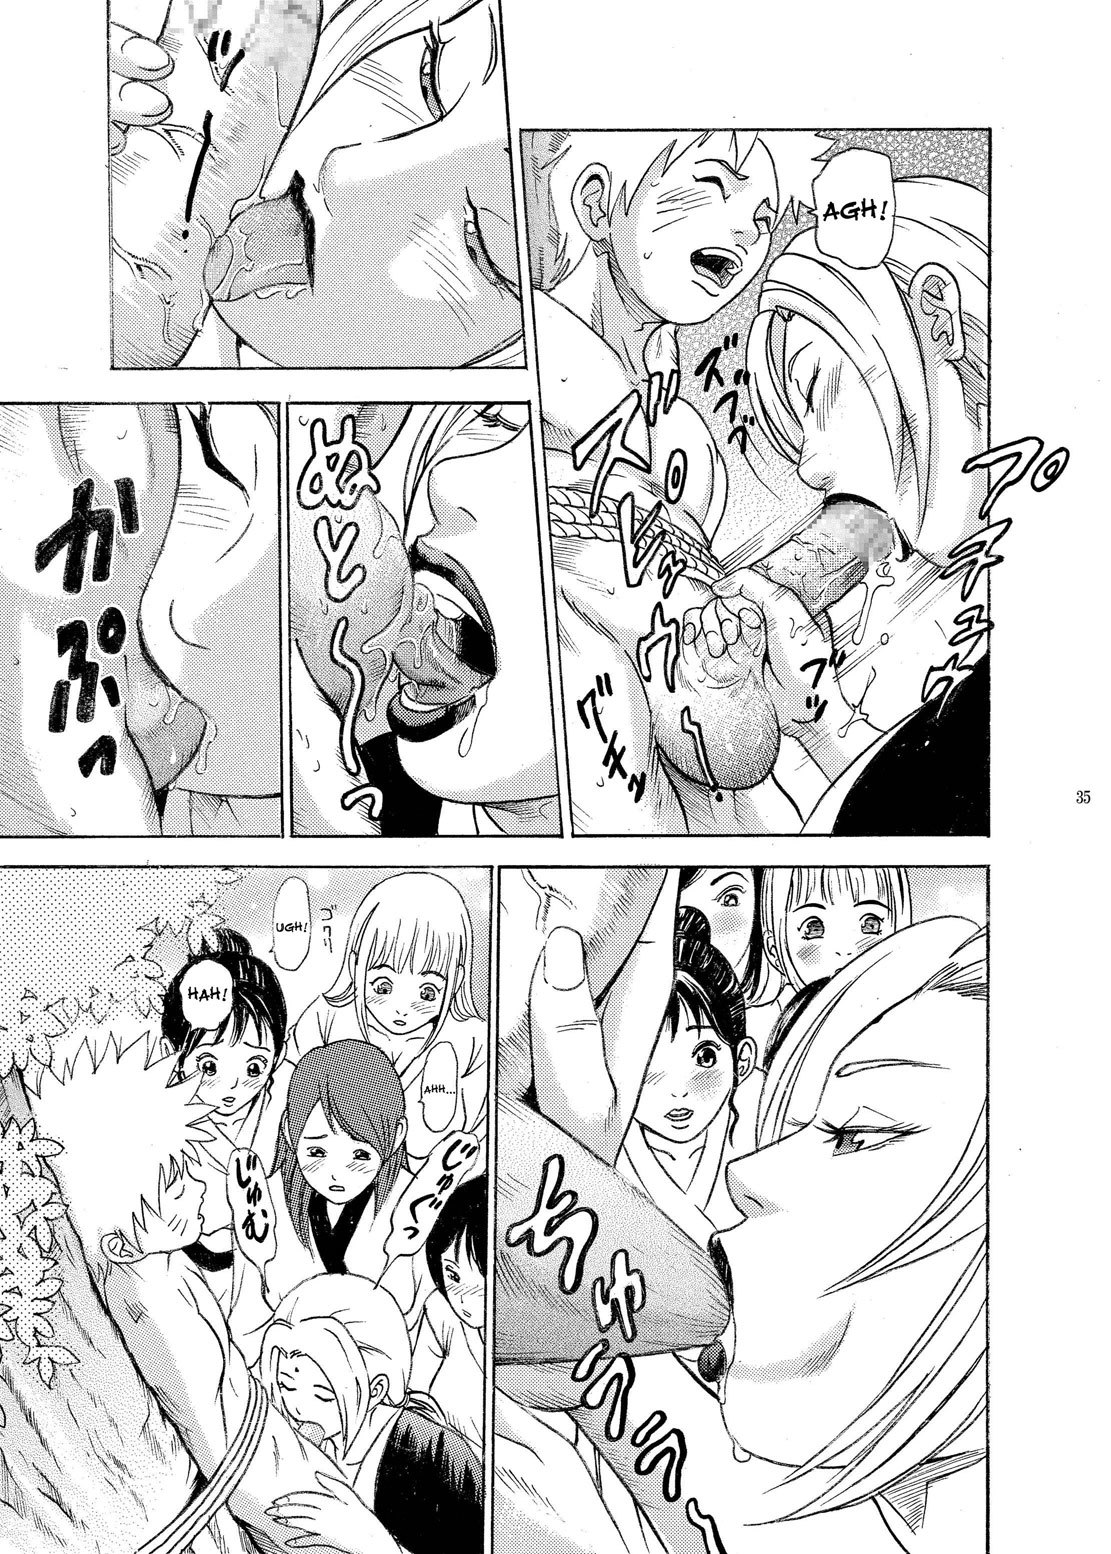 PM 9 - Indecent Ninja Exam naruto 31 hentai manga